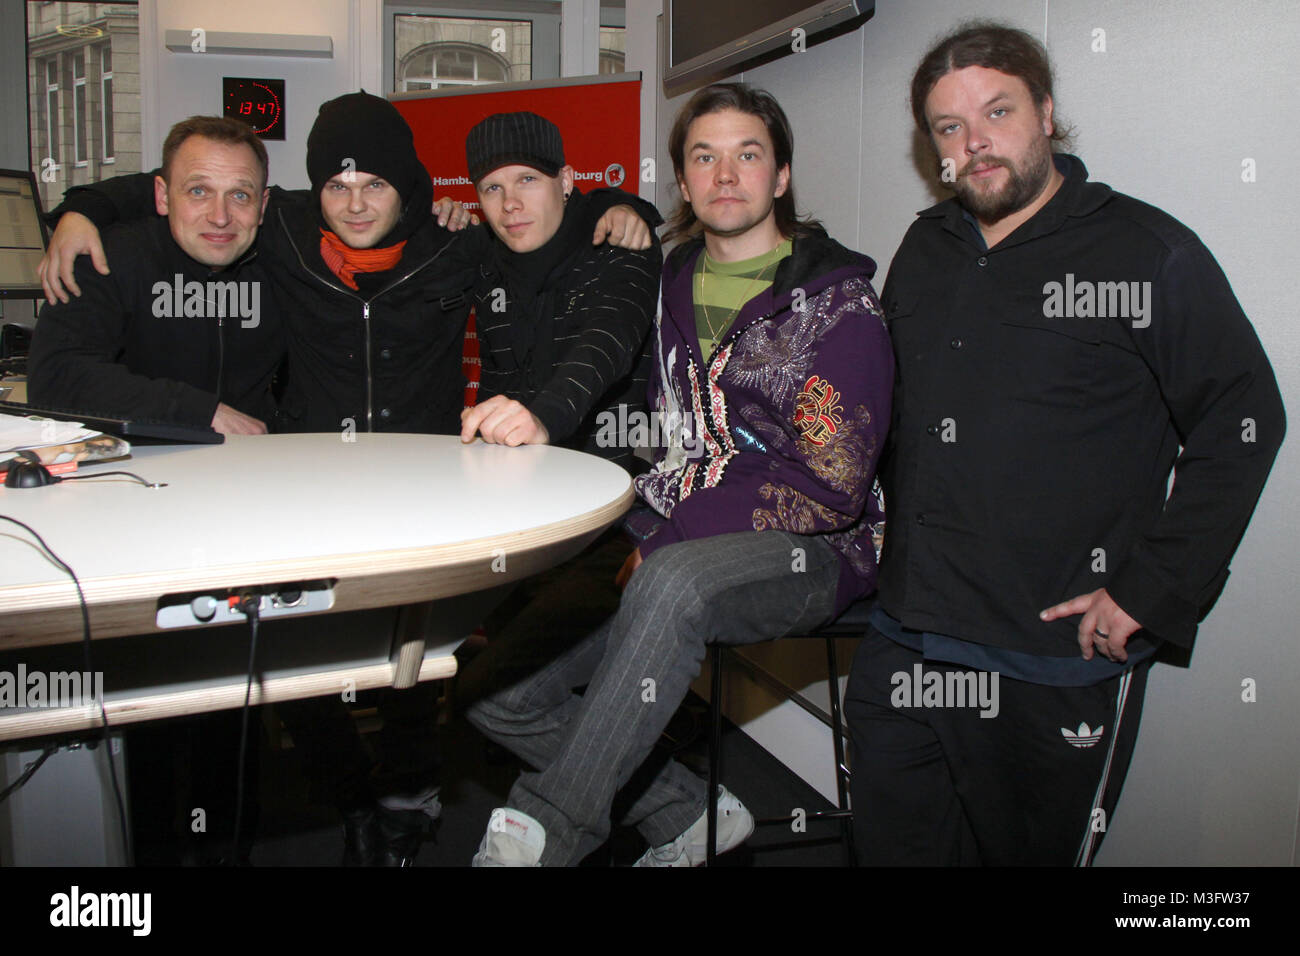 The Rasmus bei Radio Hamburg in der Show von Jan Bastick, Hamburg, 27.01.2009  The Rasmus sind eine finnische Alternative-Rock-Band. In Deutschland wurde die Band 2003 mit dem Titel In the Shadows bekannt, obwohl sie schon seit 1994 besteht und in Finnland seit laengerem erfolgreich ist. Stock Photo